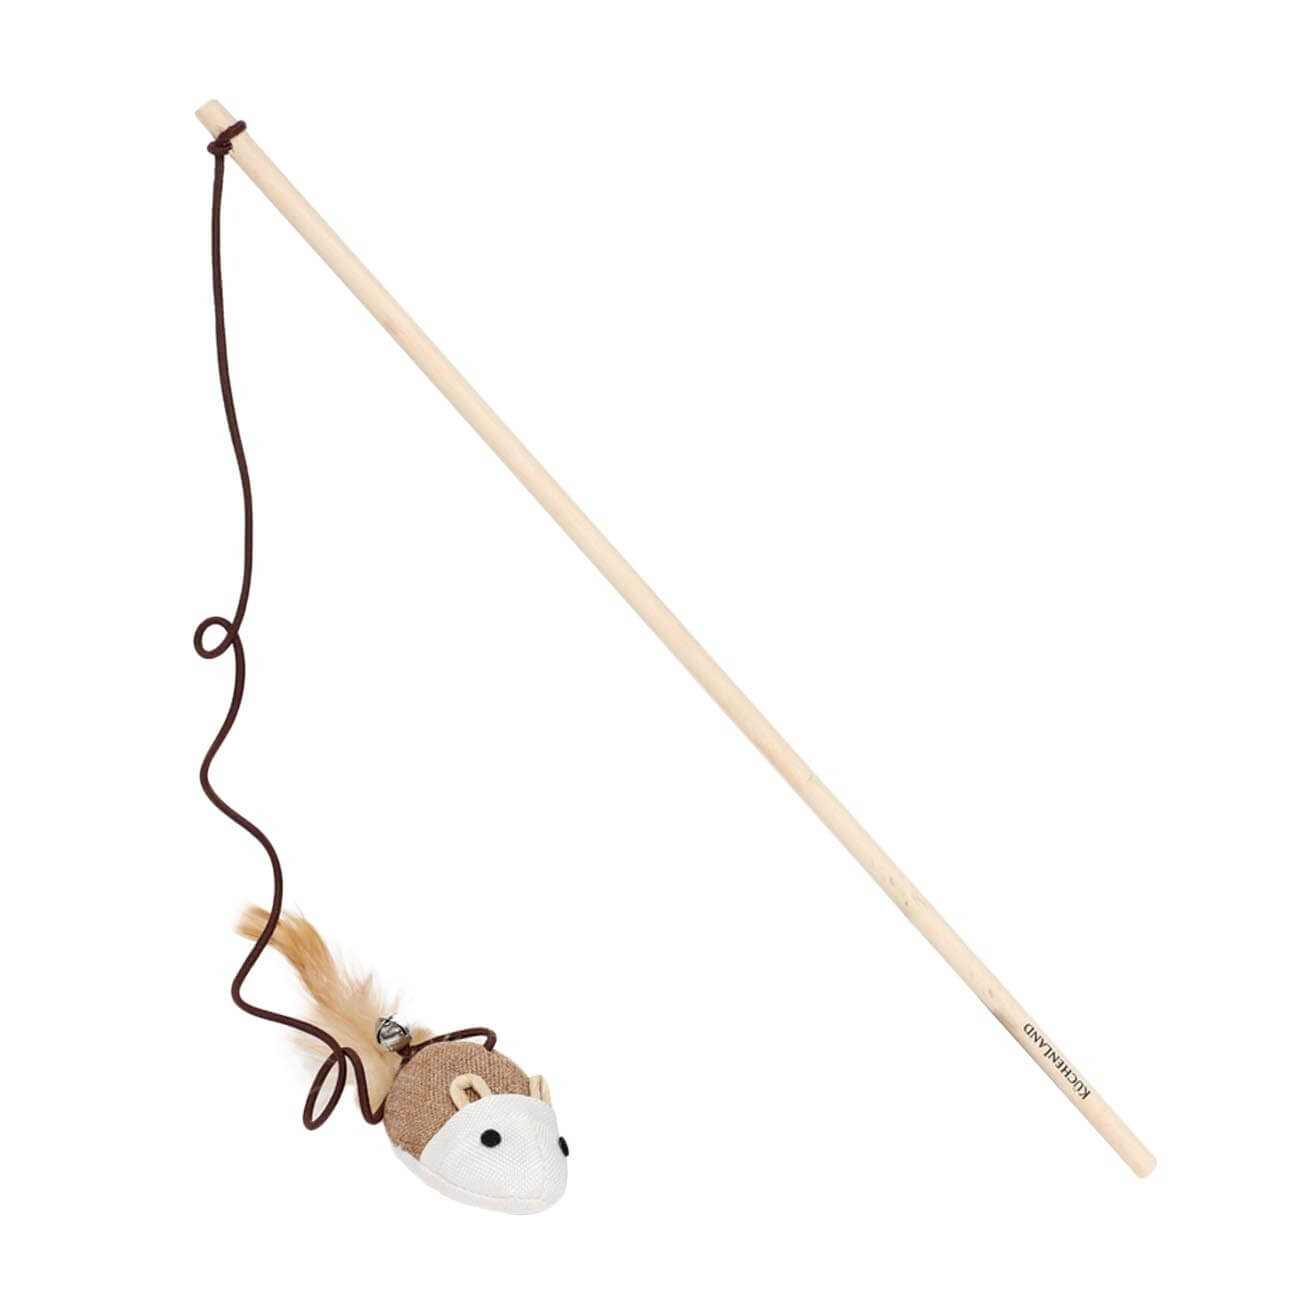 Игрушка-удочка для кошек, 1,1 м, с колокольчиком, дерево/полиэстер, Мышь, Playful cat flamingo мячики игрушка для кошек